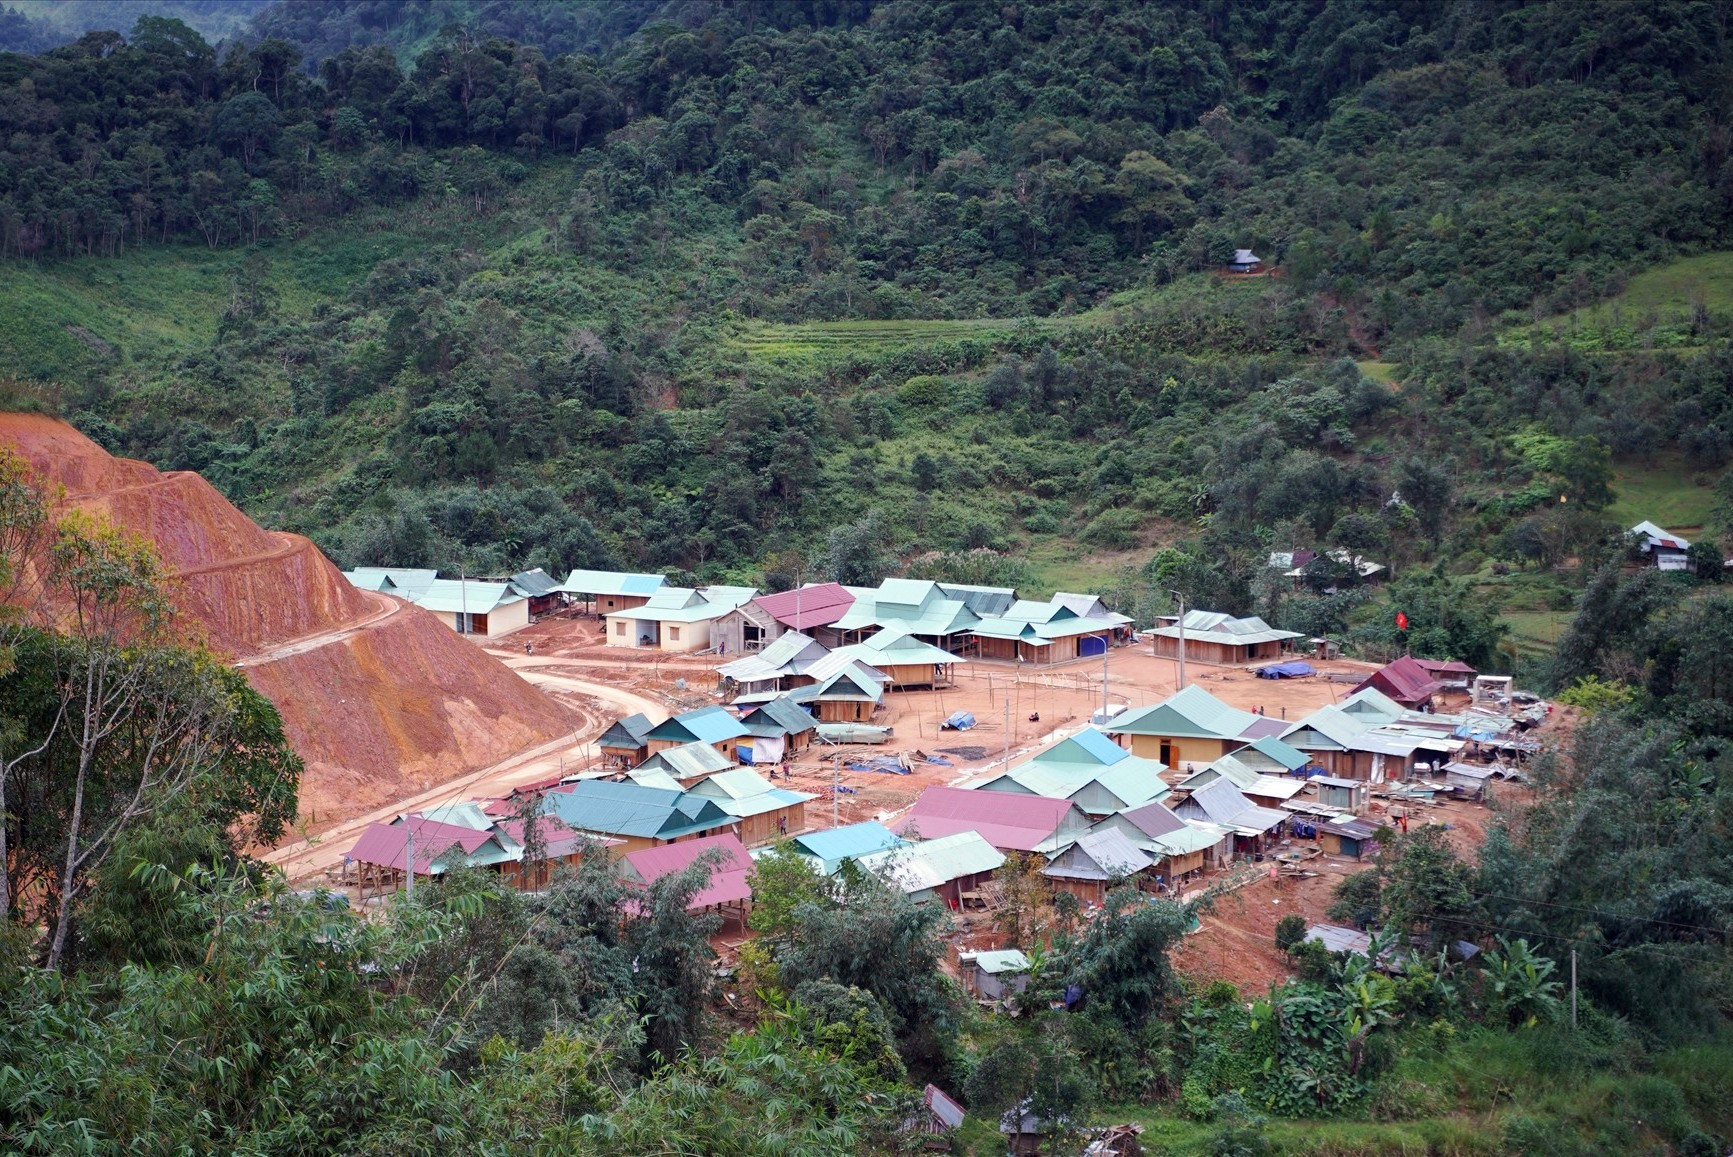 Ngôi làng mới tại xã Axan do Lifestart Foundation phối hợp với chính quyền địa phương thành lập